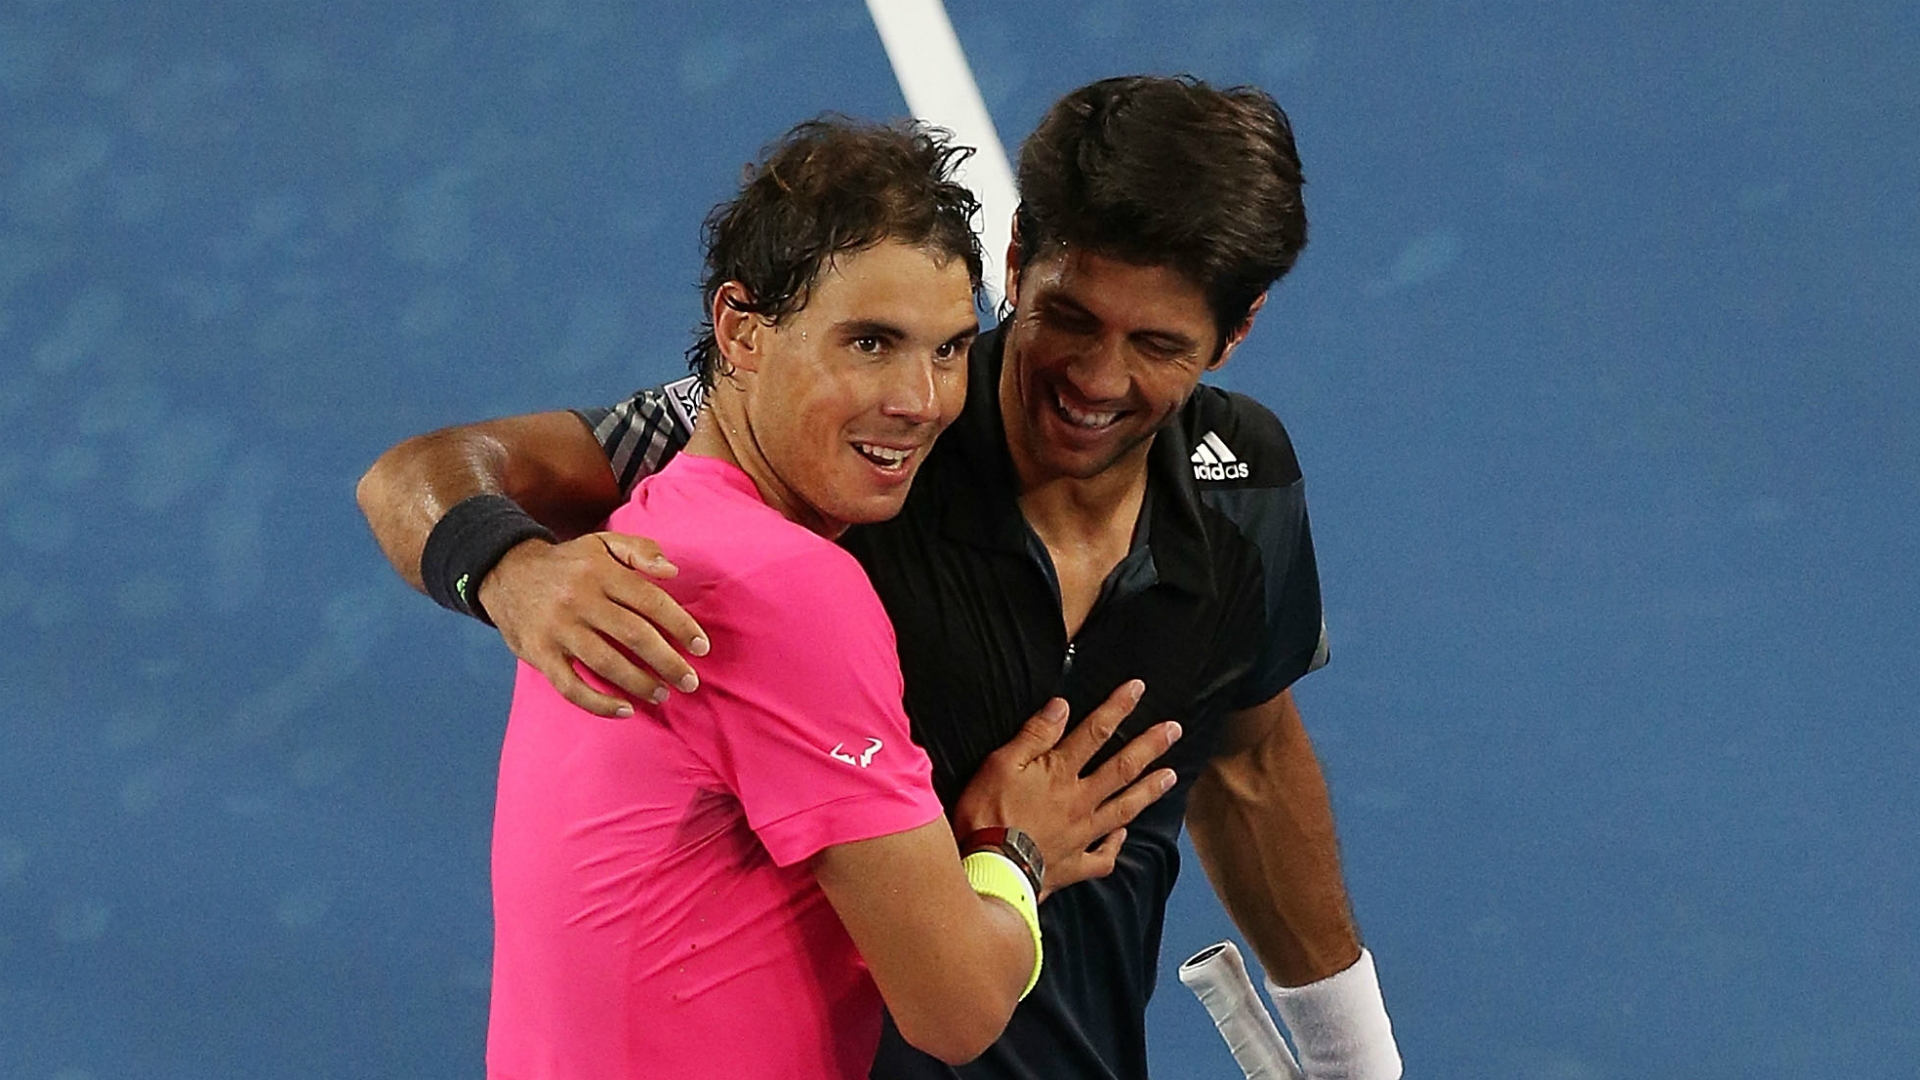 تنیس؛ رافائل نادال و فرناندو ورداسکو نمی توانند در بخش دو نفره المپیک همراه یکدیگر بازی کنند